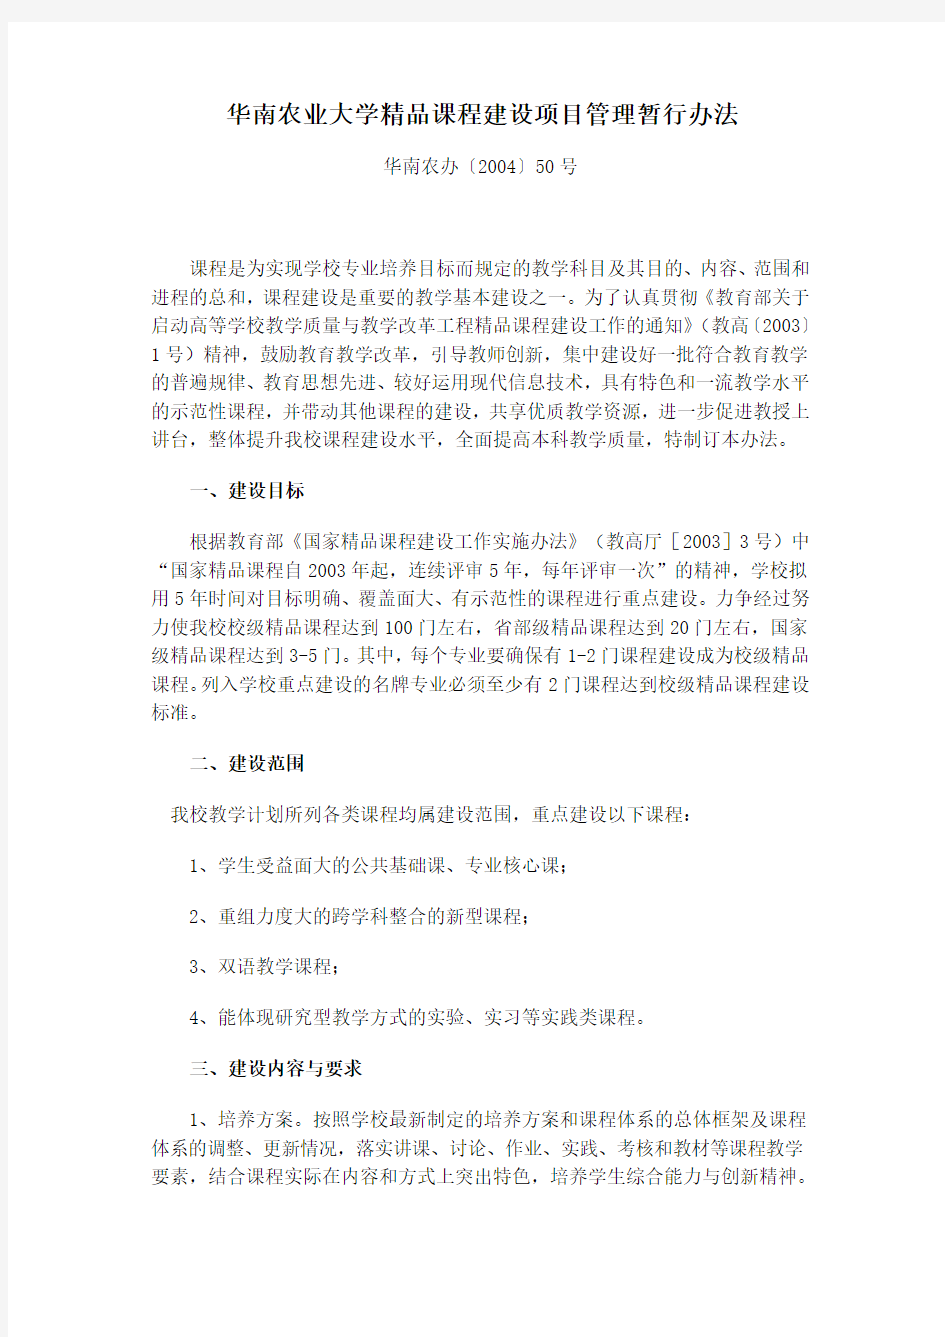 华南农业大学精品课程建设项目管理暂行办法